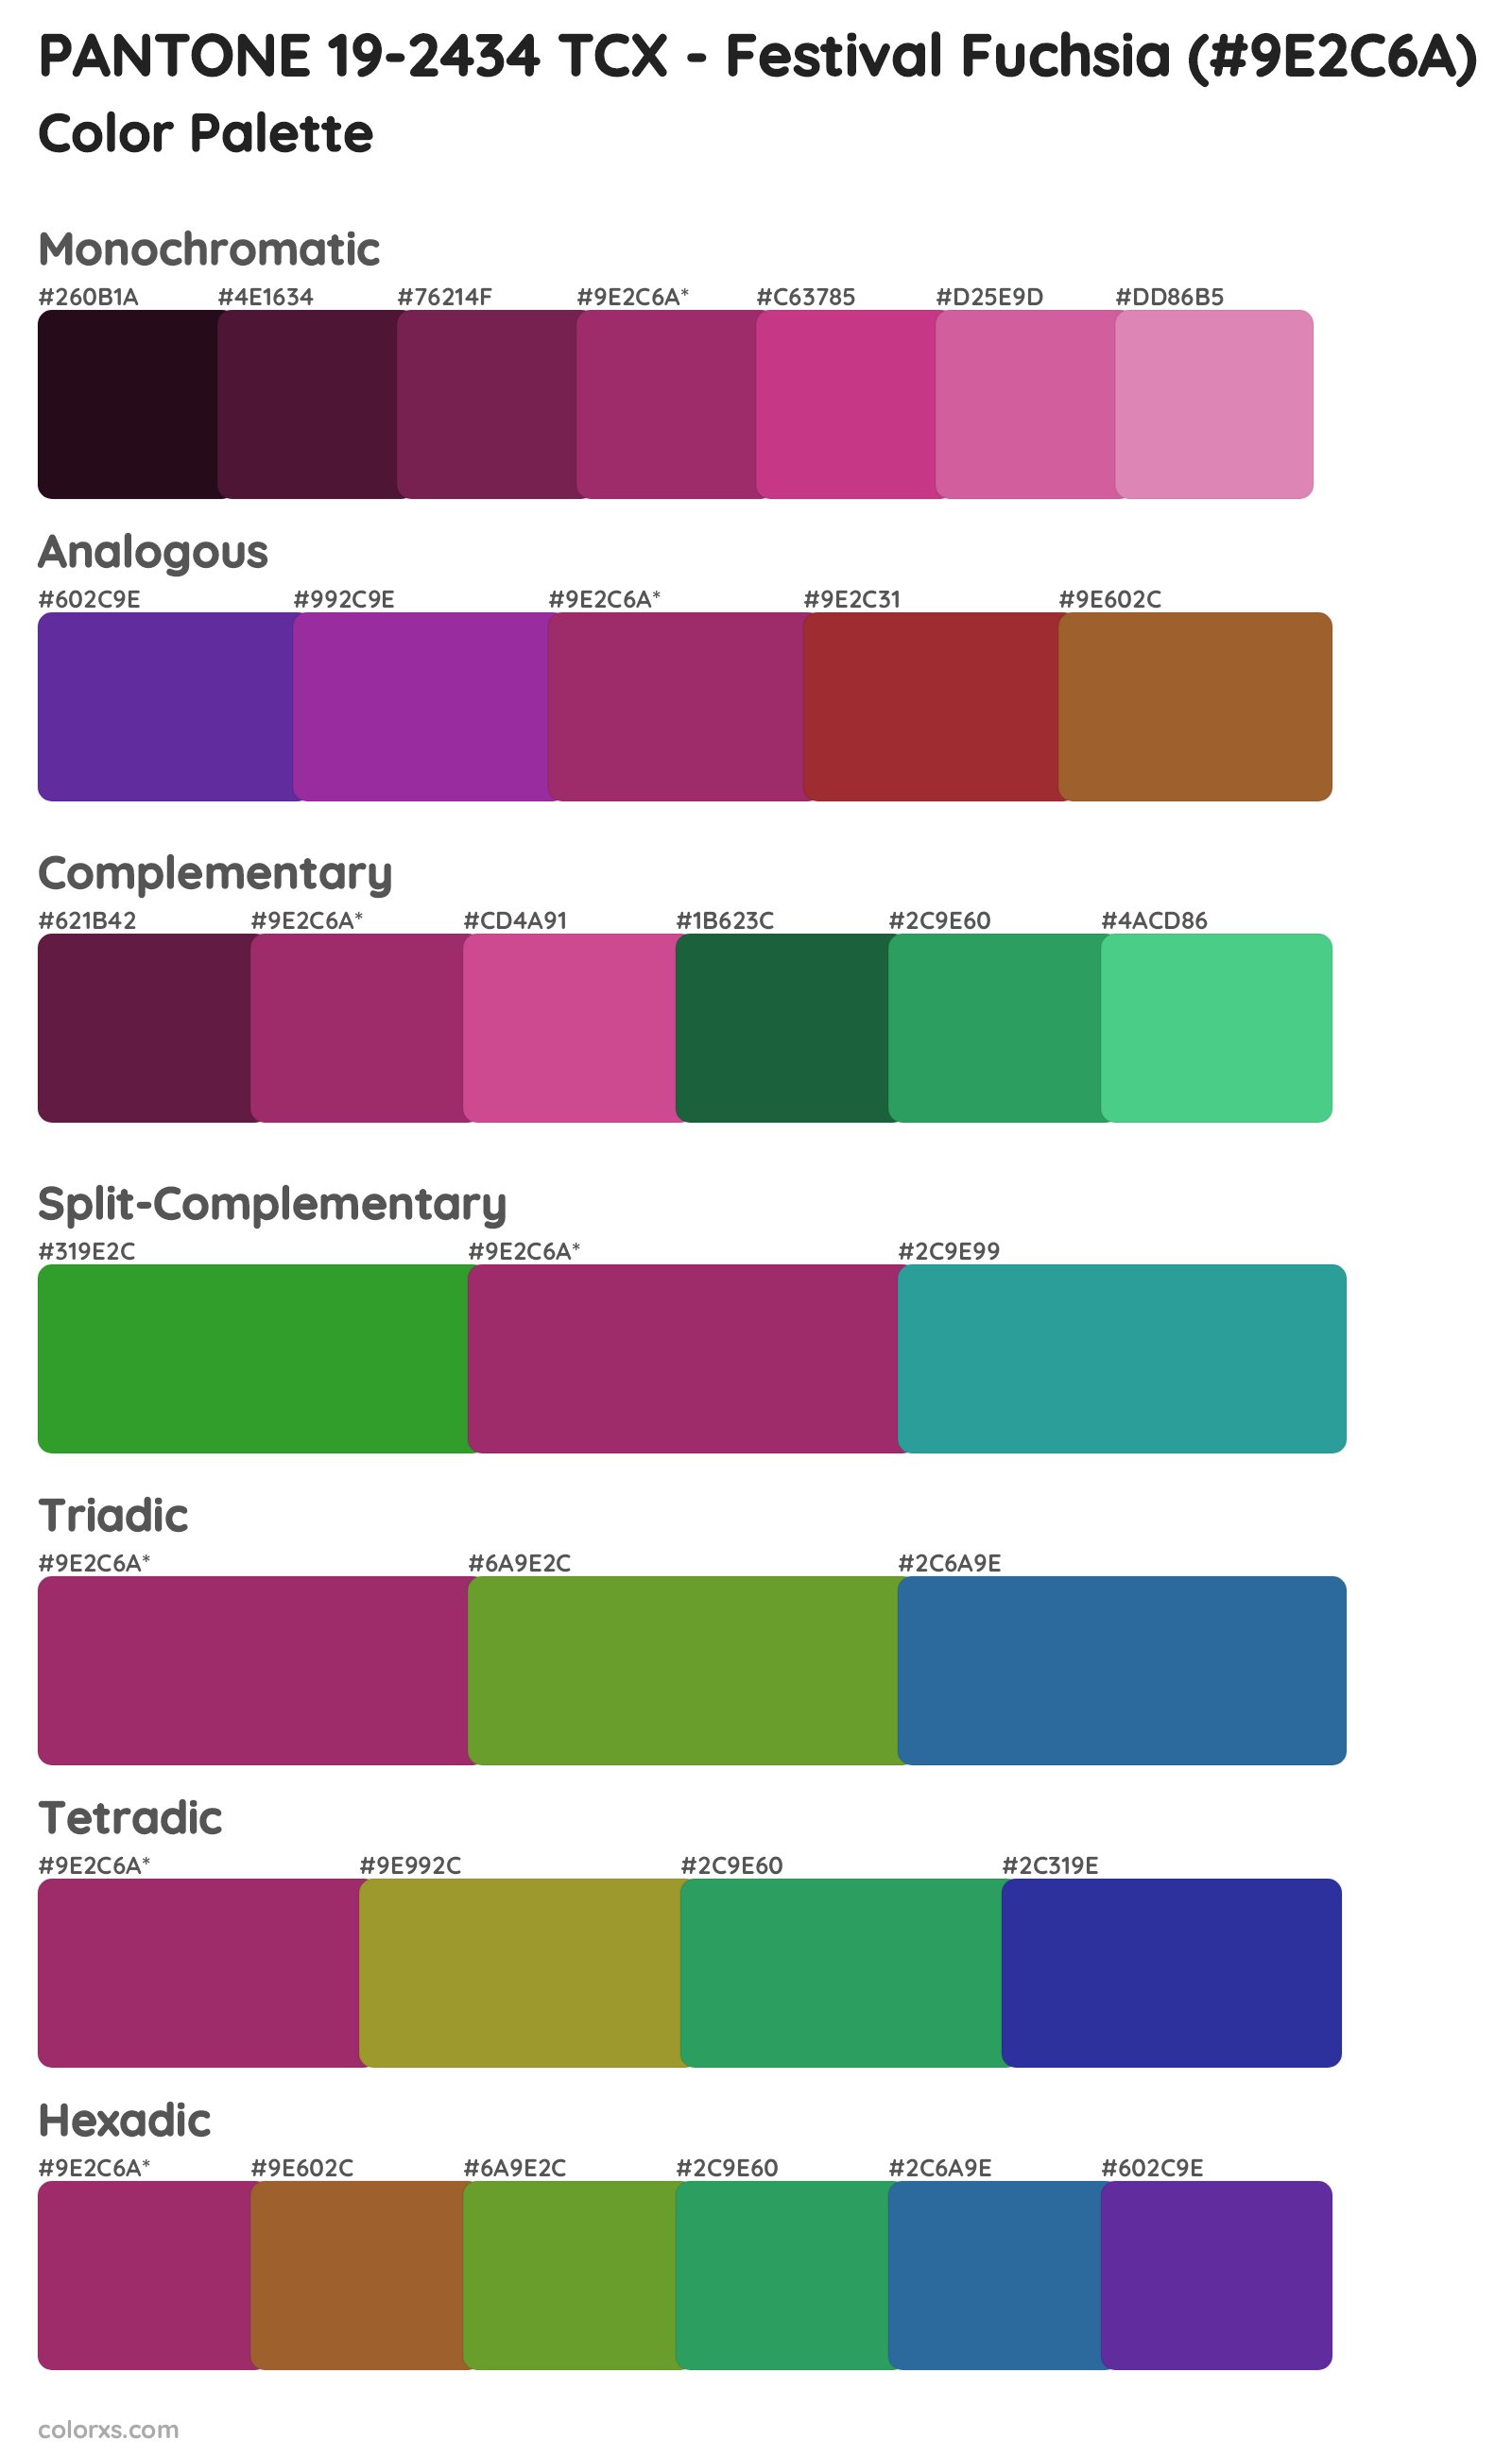 PANTONE 19-2434 TCX - Festival Fuchsia Color Scheme Palettes